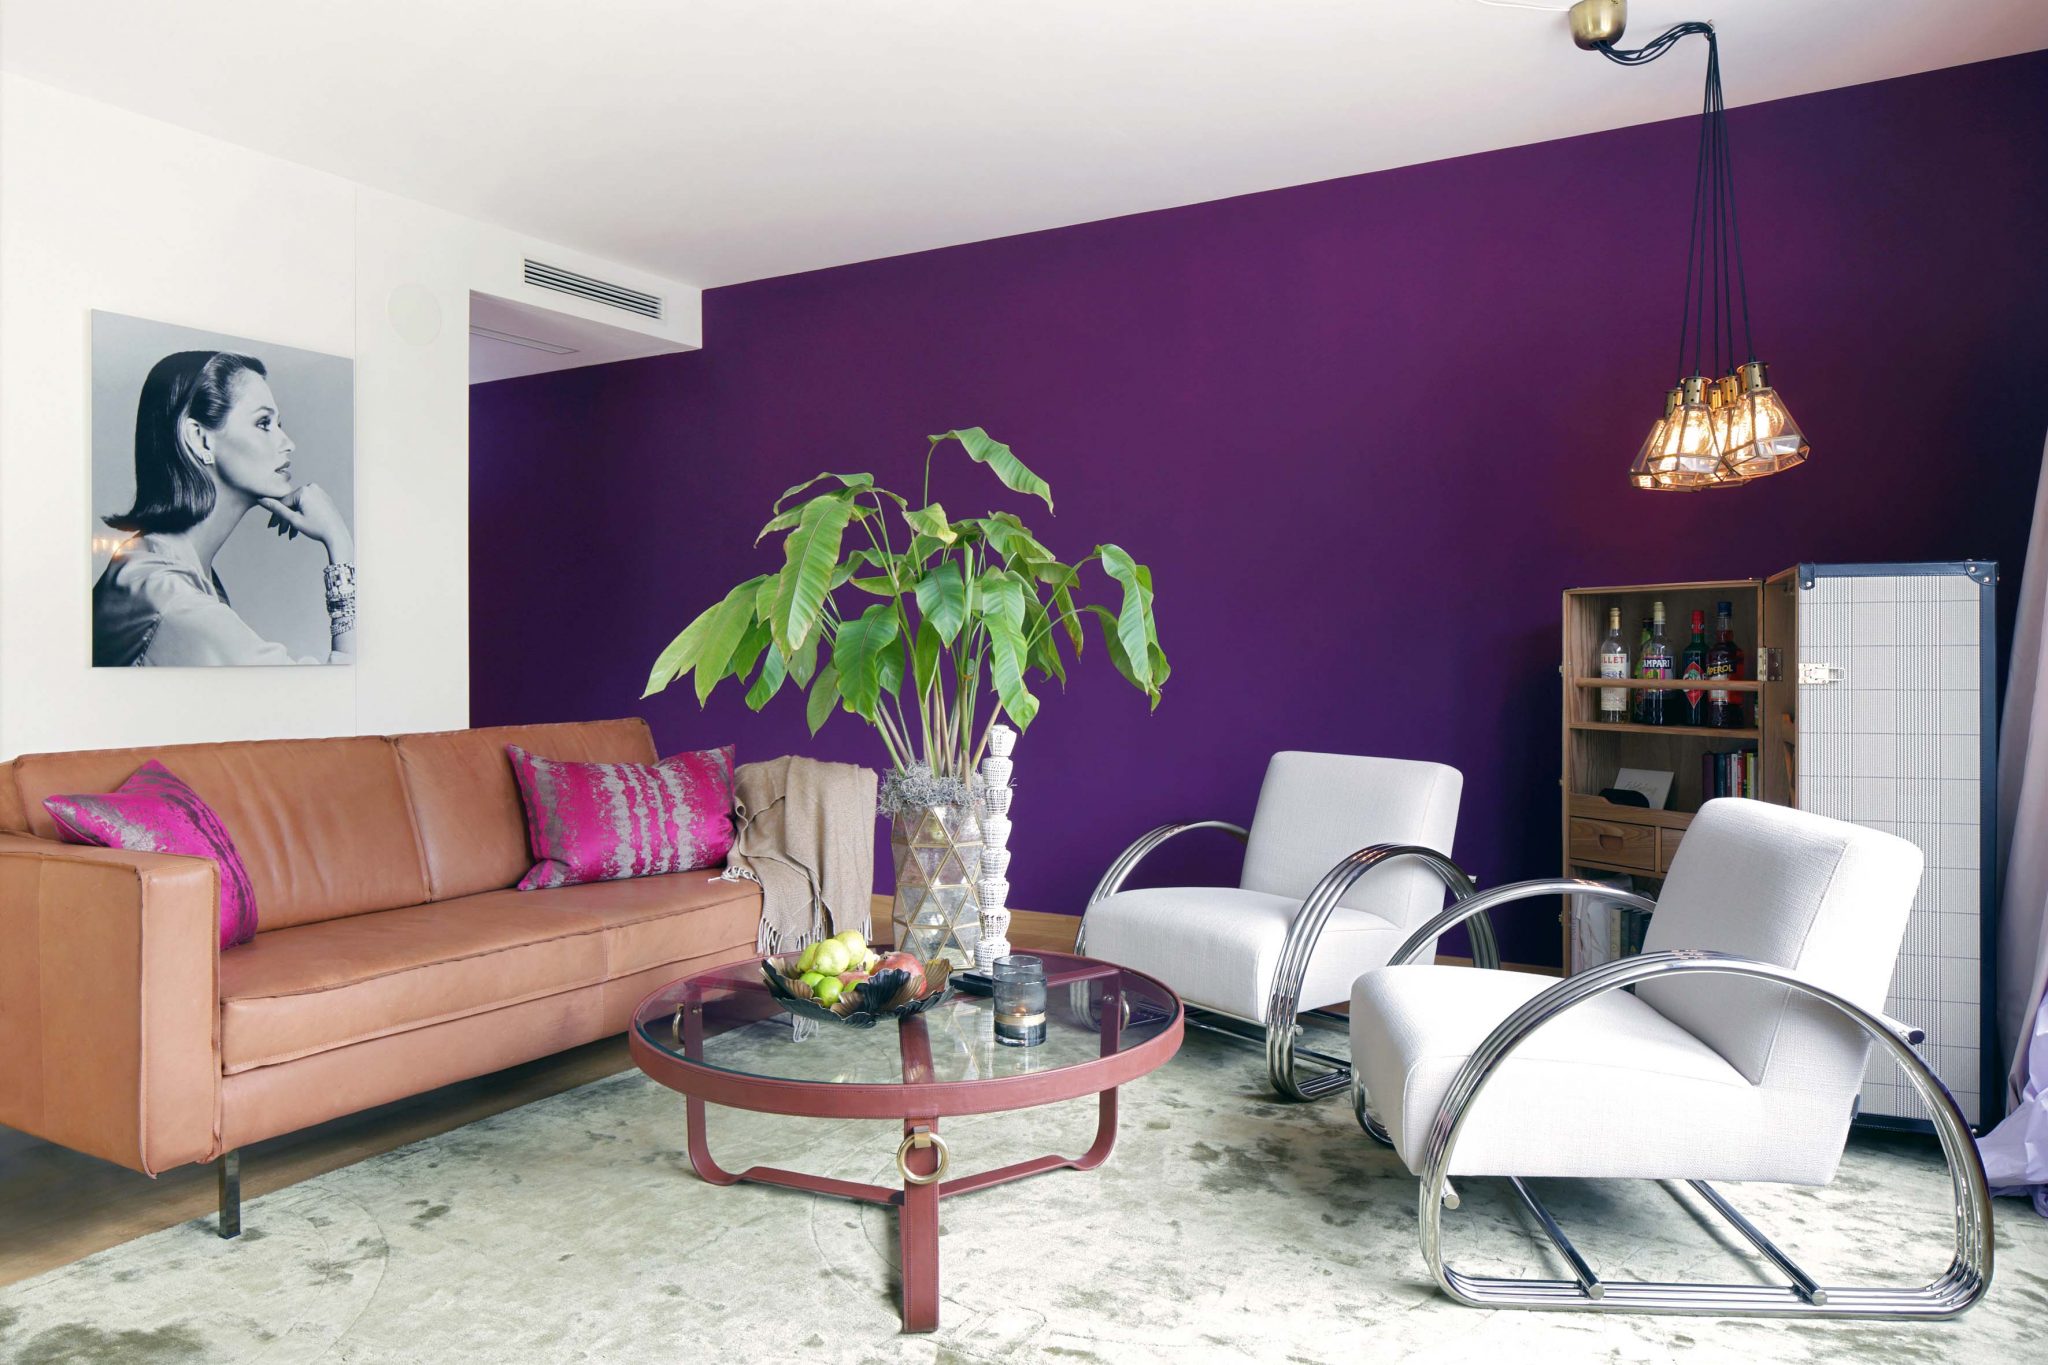 Wohnraum eingerichtet mit violetten Wänden, weißen Lounge-Sesseln, rundem Sofatisch aus Glas, Kofferbar, Ledersofa und Portrait an der Wand.